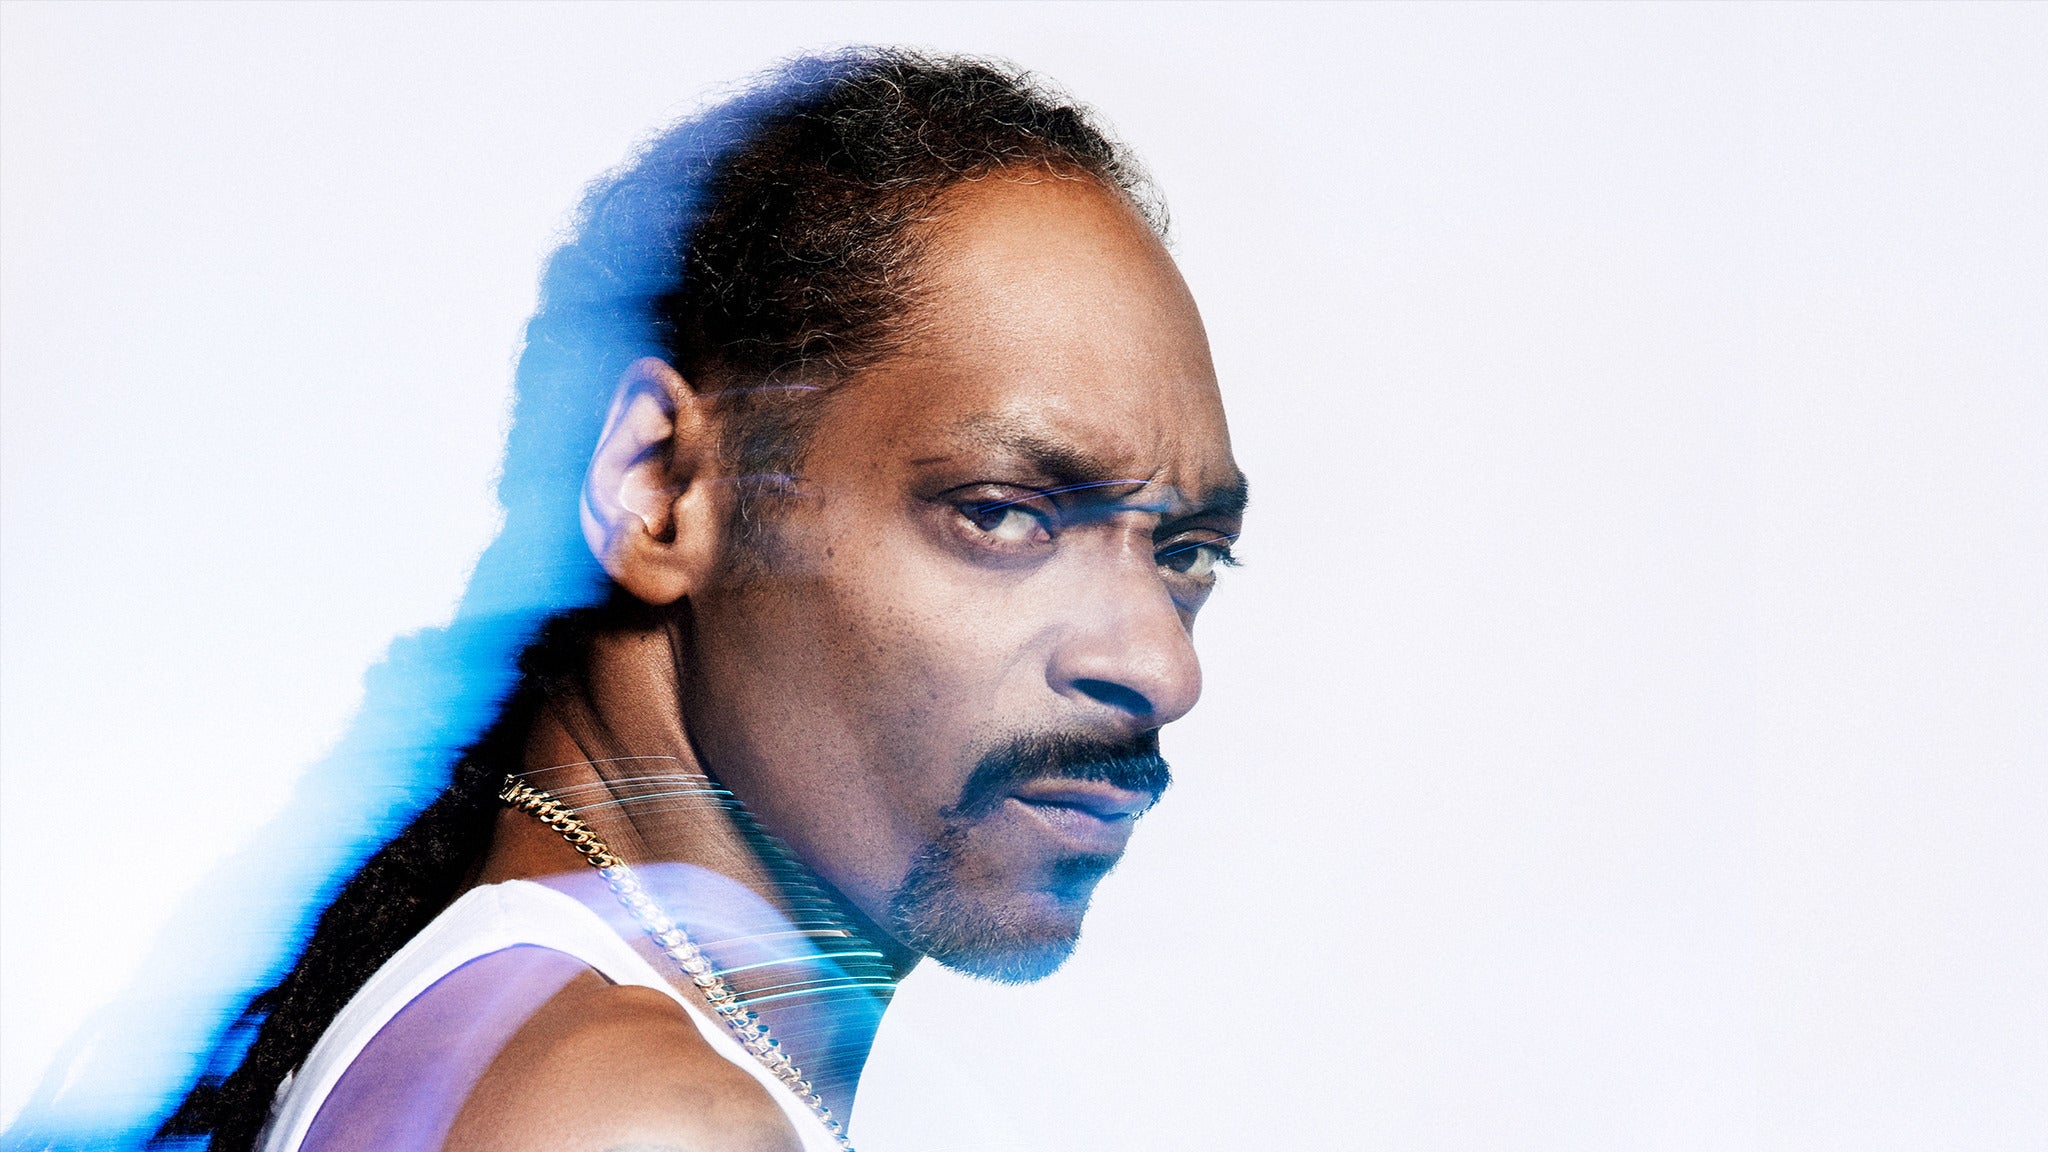 Snoop Dogg at Mechanics Bank Arena